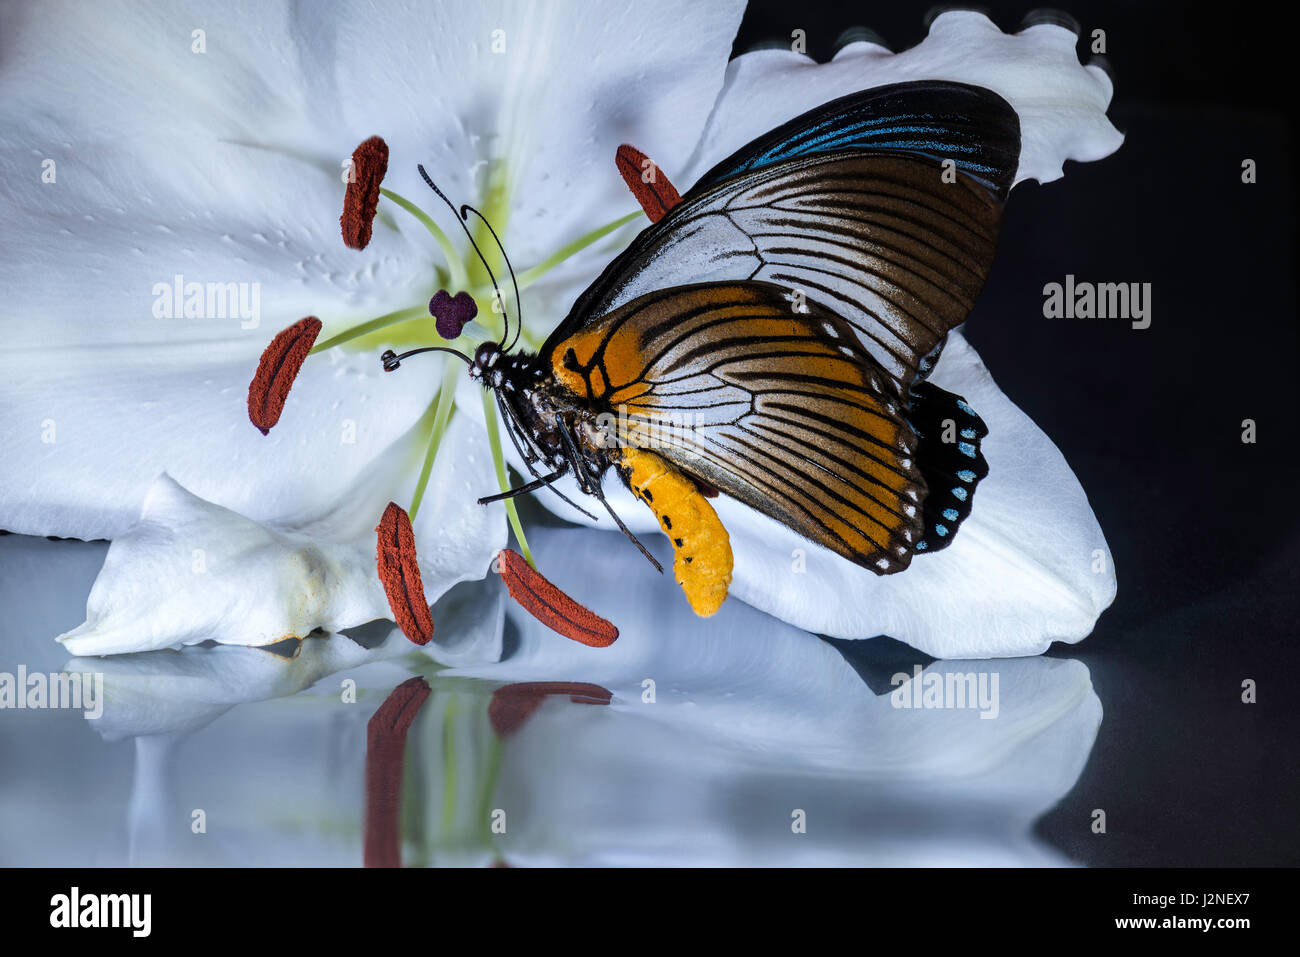 Géant de l'Afrique de l'Blue Papilio Zalmoxis) modèle figurant sur un lys blanc, spot allumé et isolé contre studio arrière-plan. Banque D'Images